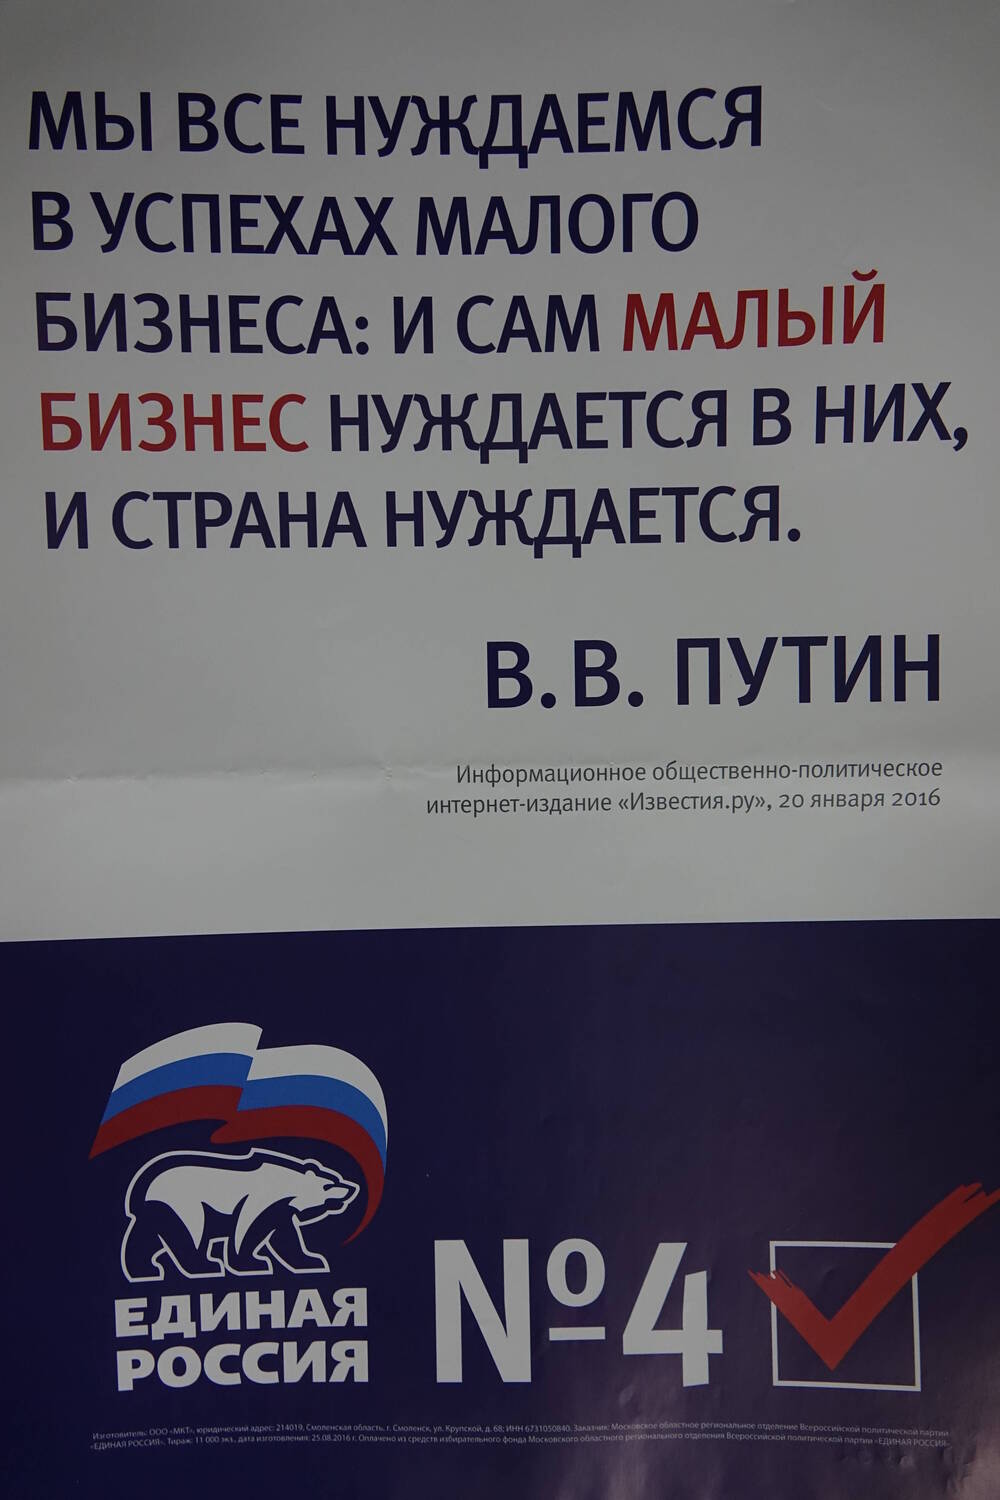 Плакат с надписью: «Мы все нуждаемся в успехах малого бизнеса: и сам малый бизнес нуждается в них, и страна нуждается. В.В.Путин»